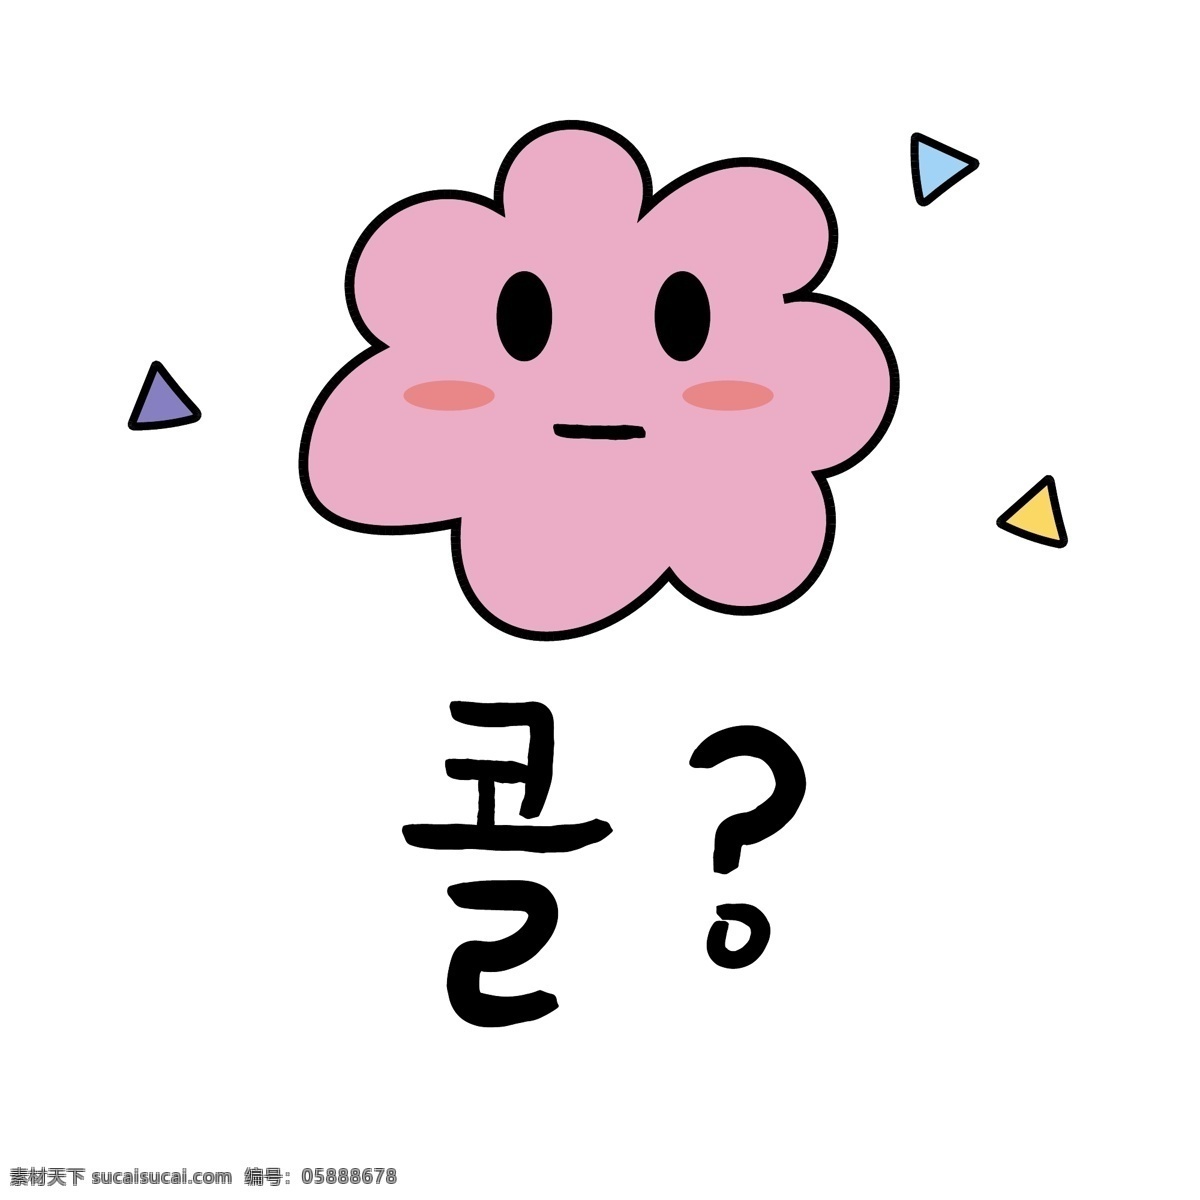 韩国常用语 肝药 云 钓鱼鱼 雷格呼叫 漫画 靠山 小的 日常用语 卡通 颜色粉色